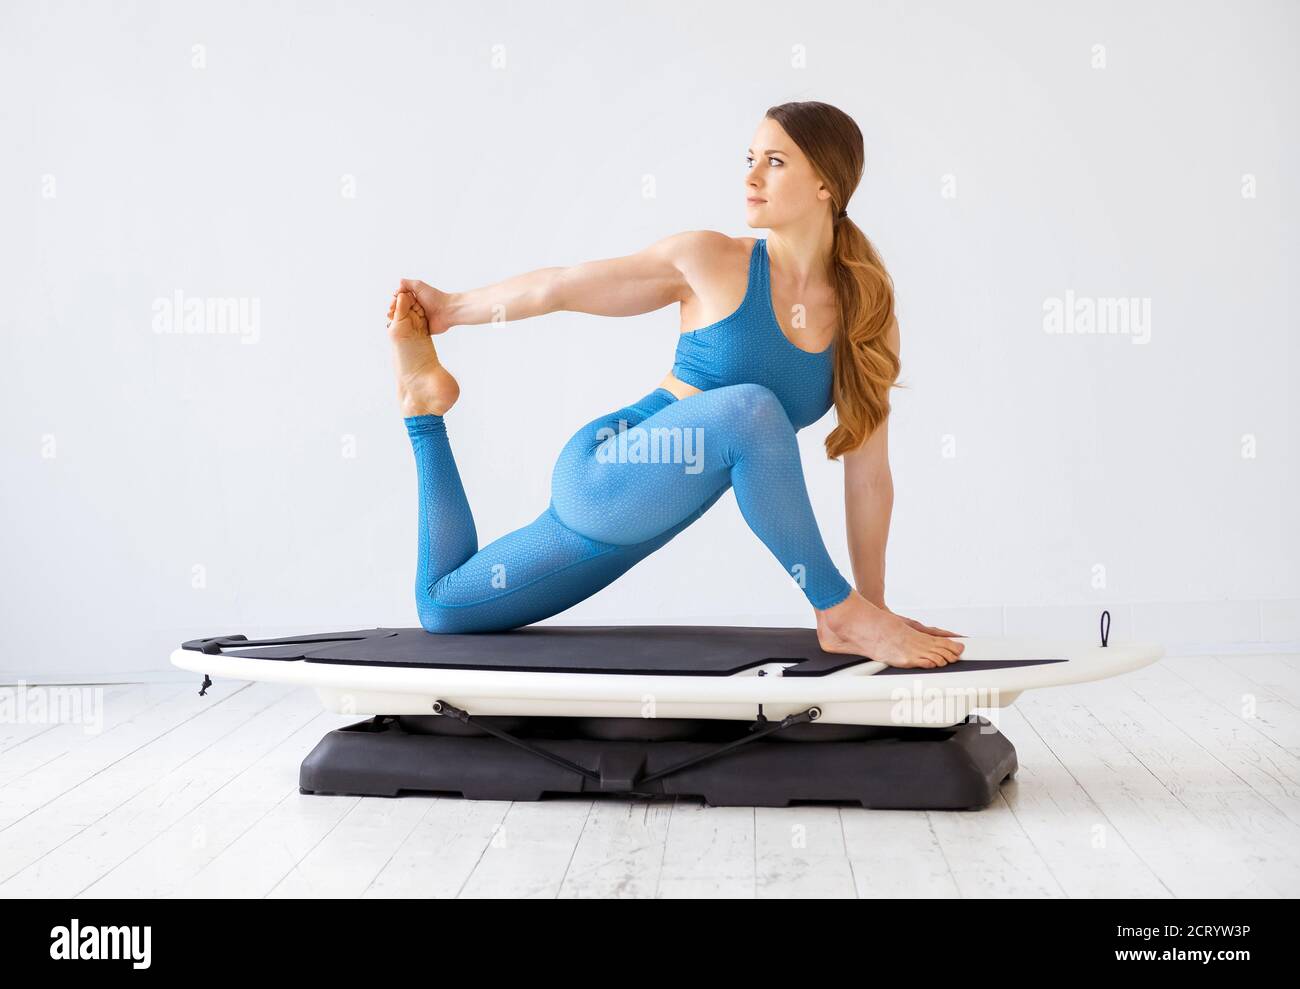 Junge Frau macht Dehnübungen der Oberschenkelmuskulatur ihres hinteren Beins Muskeln auf einem Surfset in einer Seitenansicht in einem High-Key-Fitness-Studio in einem Gesundheits-und Fitness-Co Stockfoto